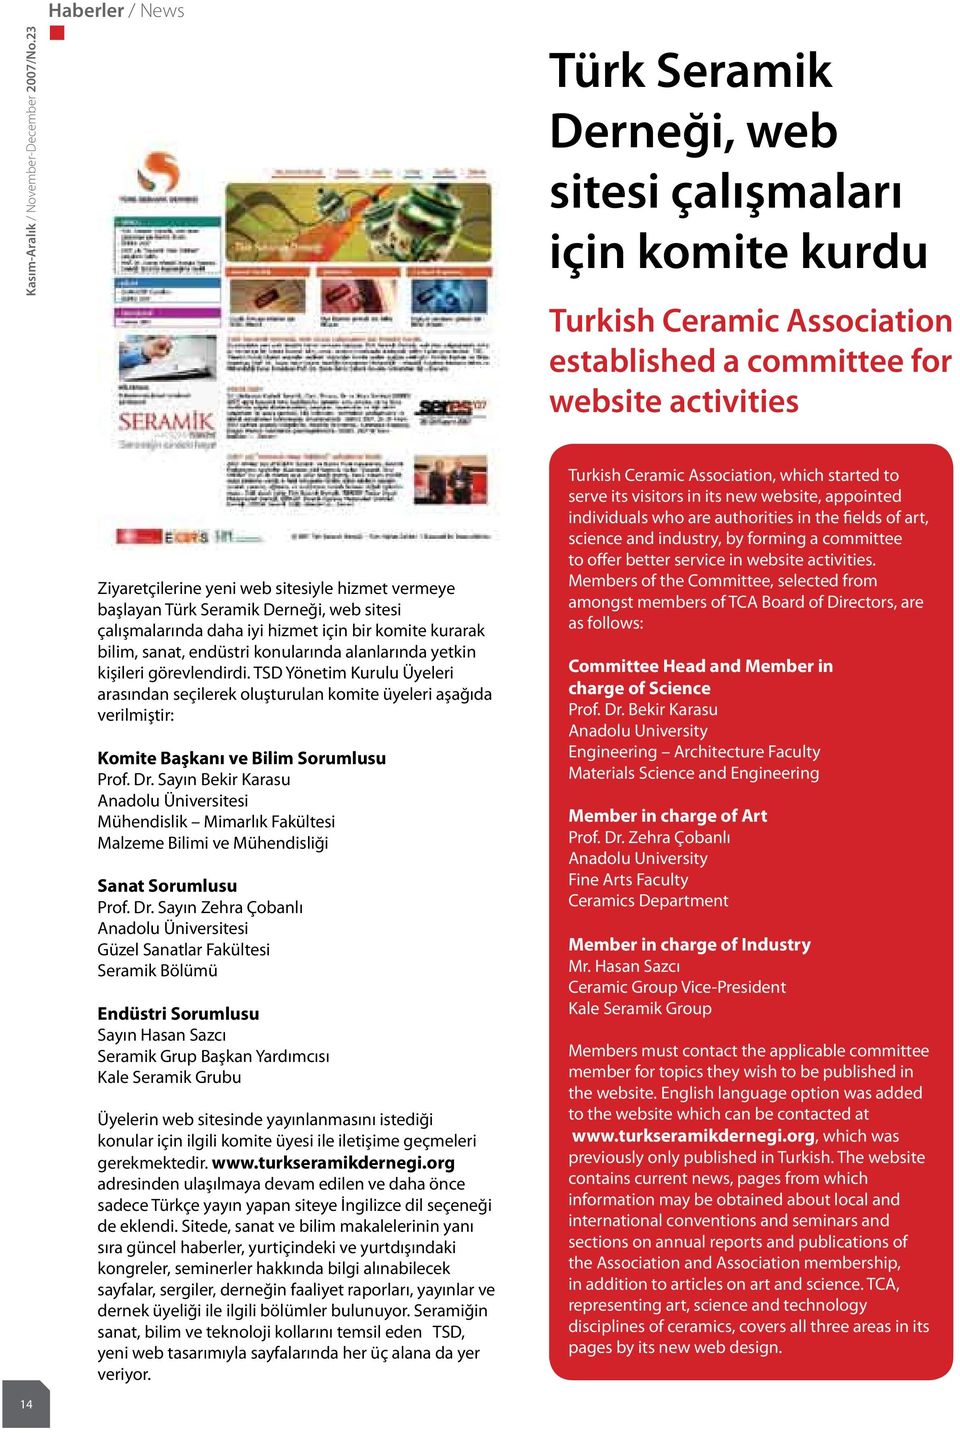 vermeye başlayan Türk Seramik Derneği, web sitesi çalışmalarında daha iyi hizmet için bir komite kurarak bilim, sanat, endüstri konularında alanlarında yetkin kişileri görevlendirdi.